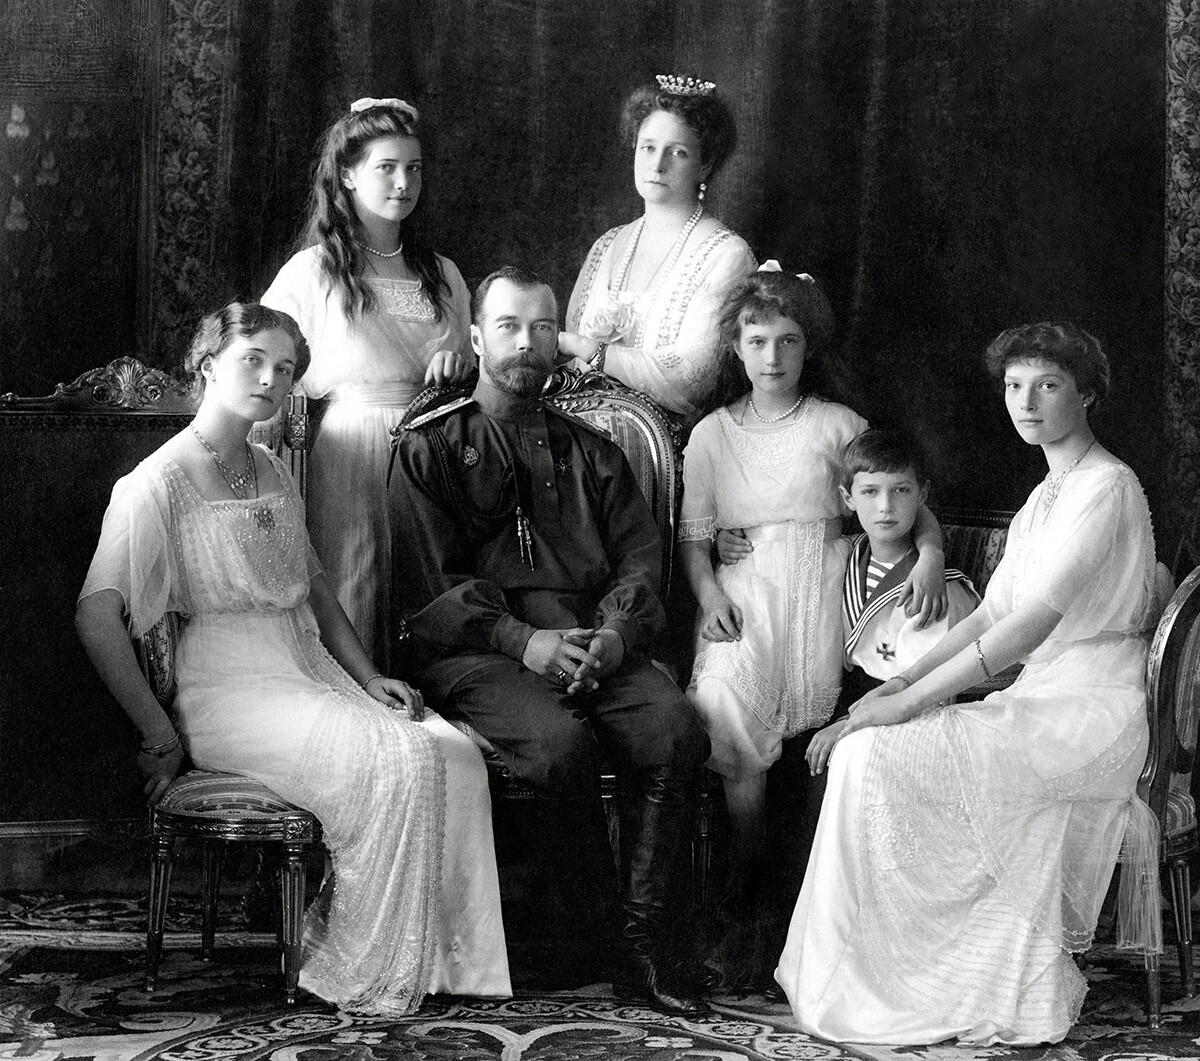 El emperador Nicolás II de Rusia con su familia (de izquierda a derecha): Olga, María, Nicolás II, Alexandra Fiódorovna, Anastasia, Alexéi y Tatiana. Livadiya, 1913. Retrato del estudio Levitsky, Livadiya.